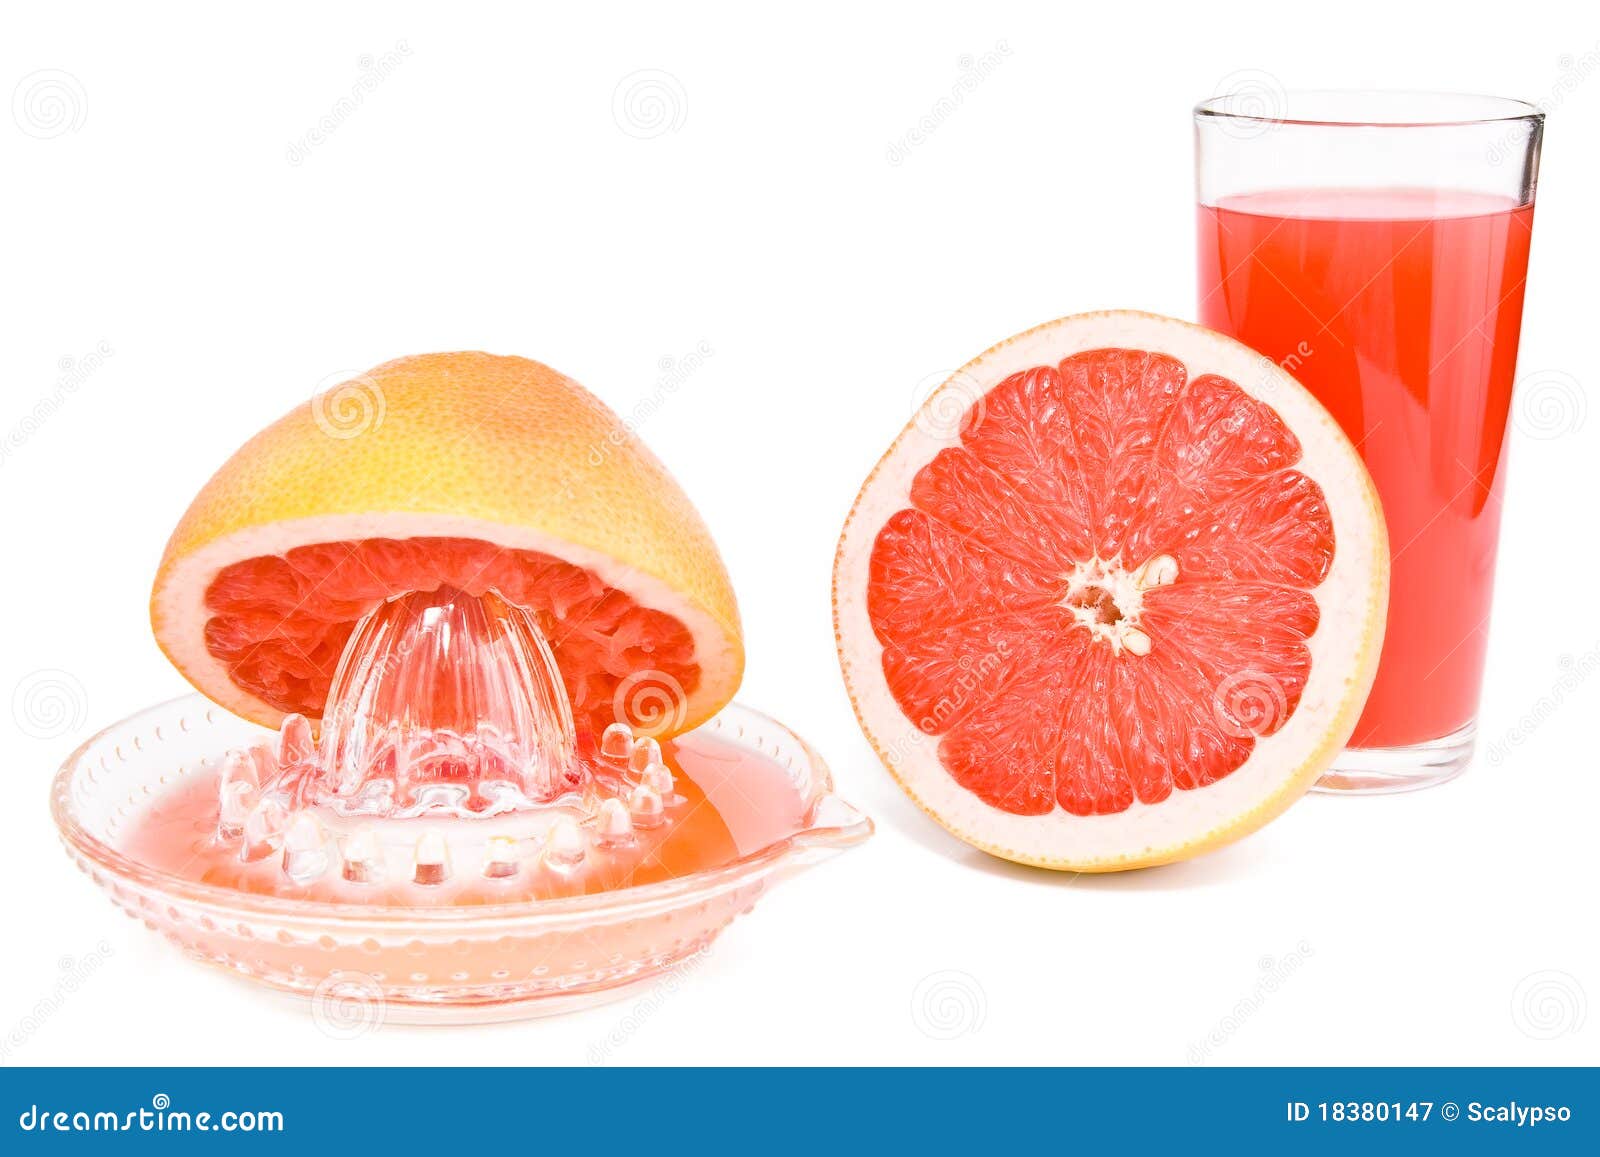 新葡萄柚汁粉红色 库存图片. 图片 包括有 原始, 食物, 绿色, 汁液, 新鲜, 本质, 打赌的人, 水多 - 17672585